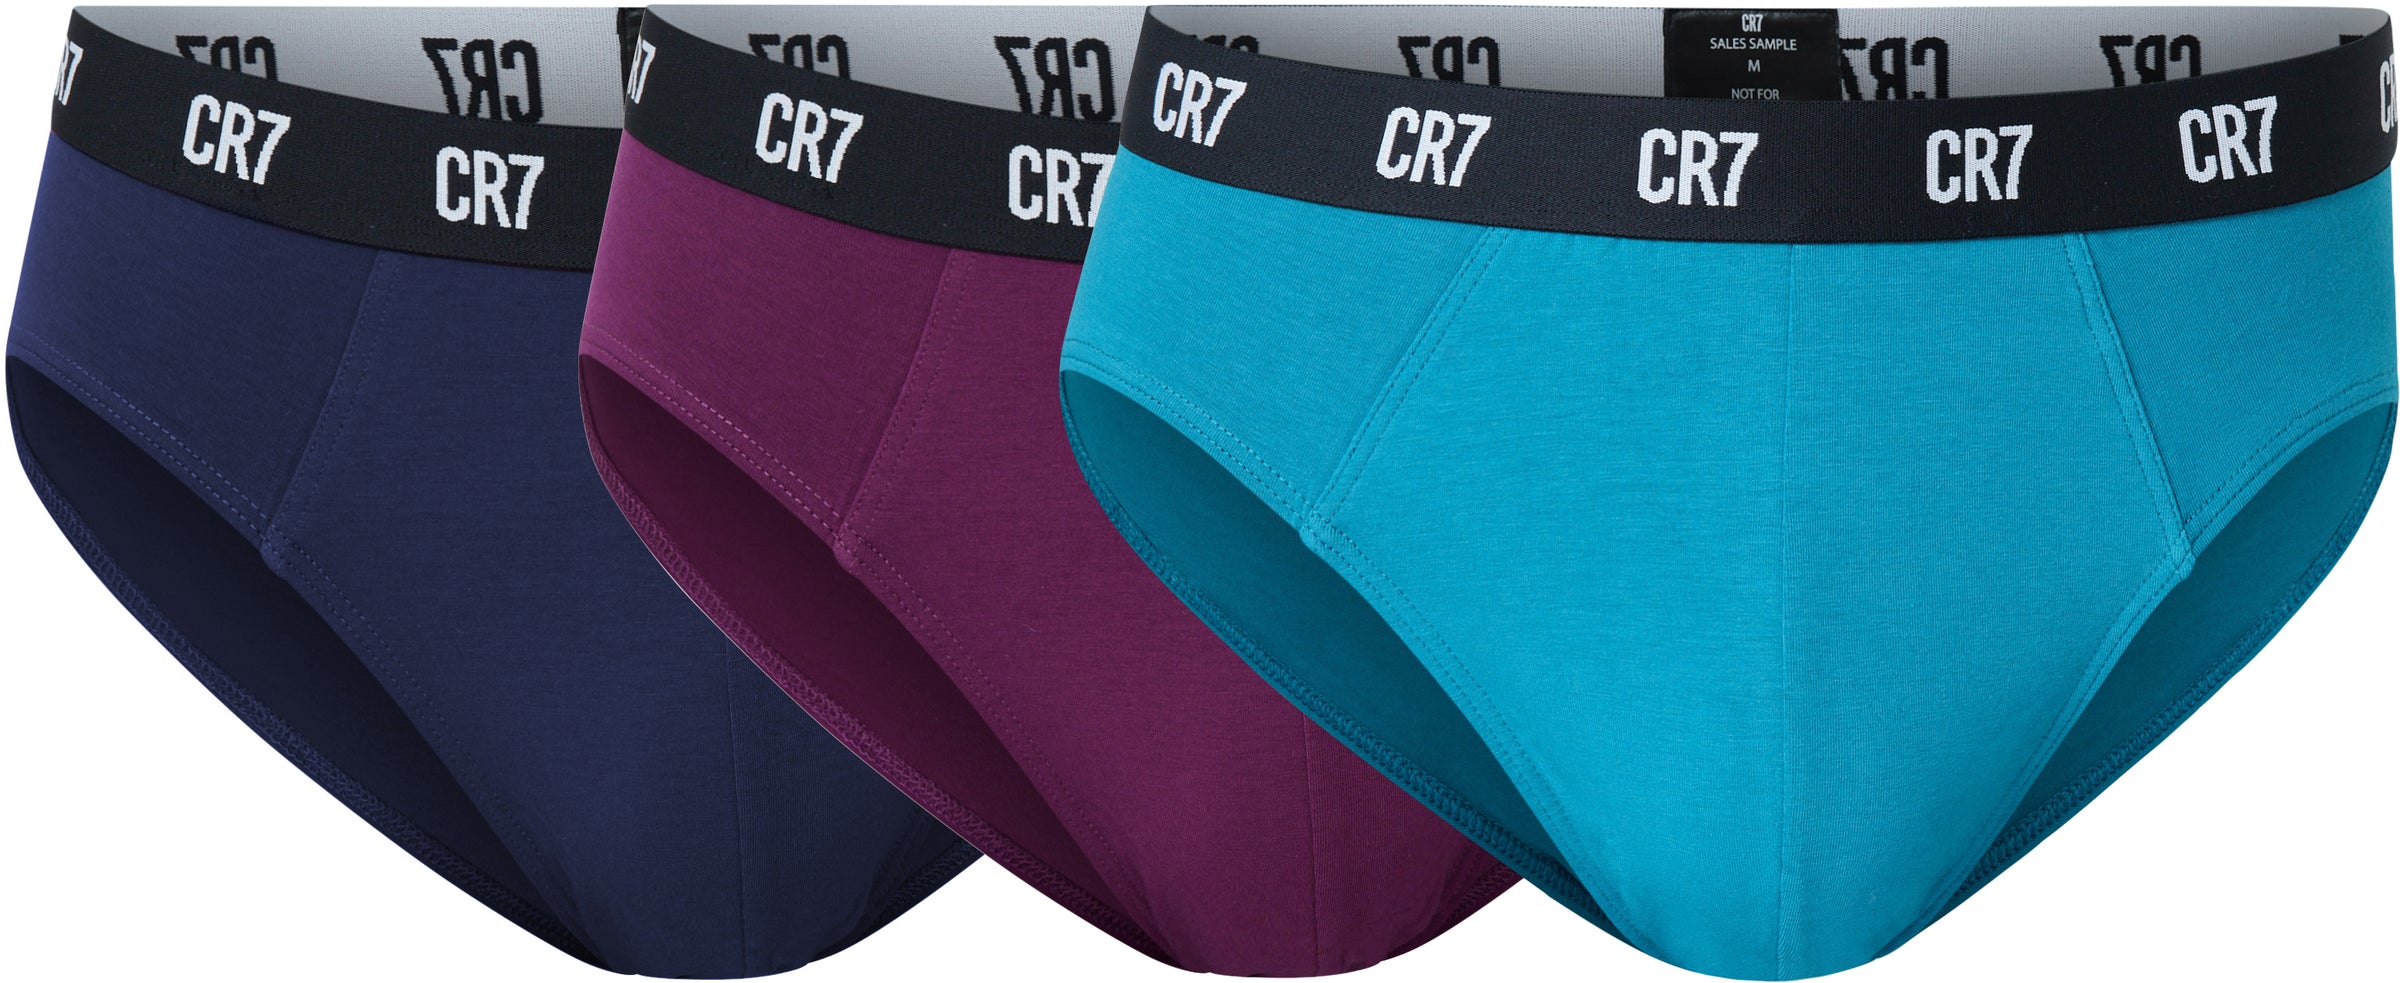 CR7 Mens Boxers 3 Pack Cristiano Ronaldo Logo Cotton Fashion Underwear